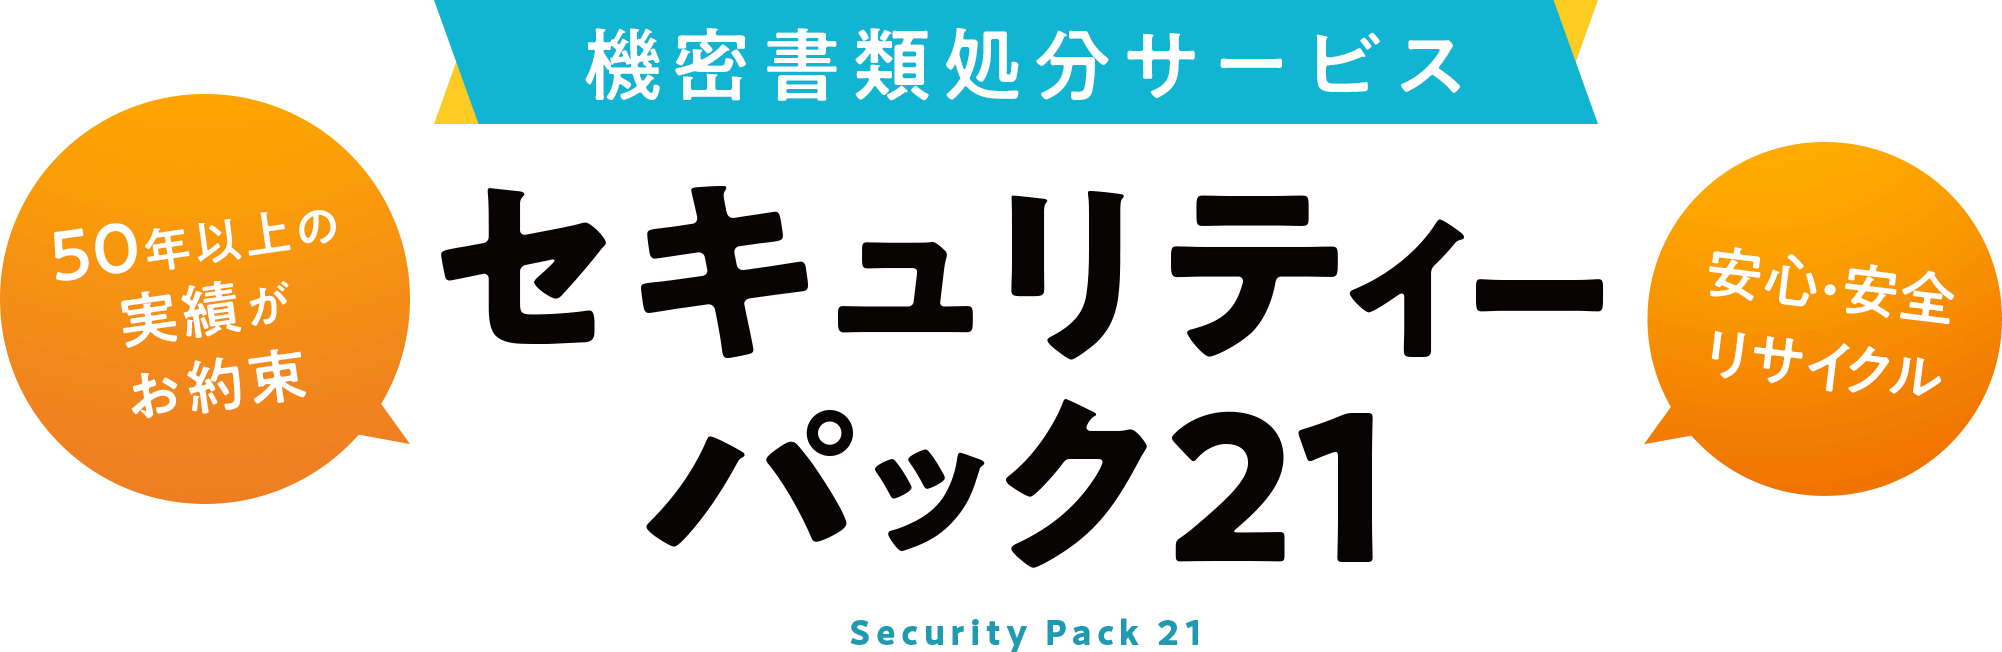 1箱からの個人向け書類処分サービス セキュリティーパック21